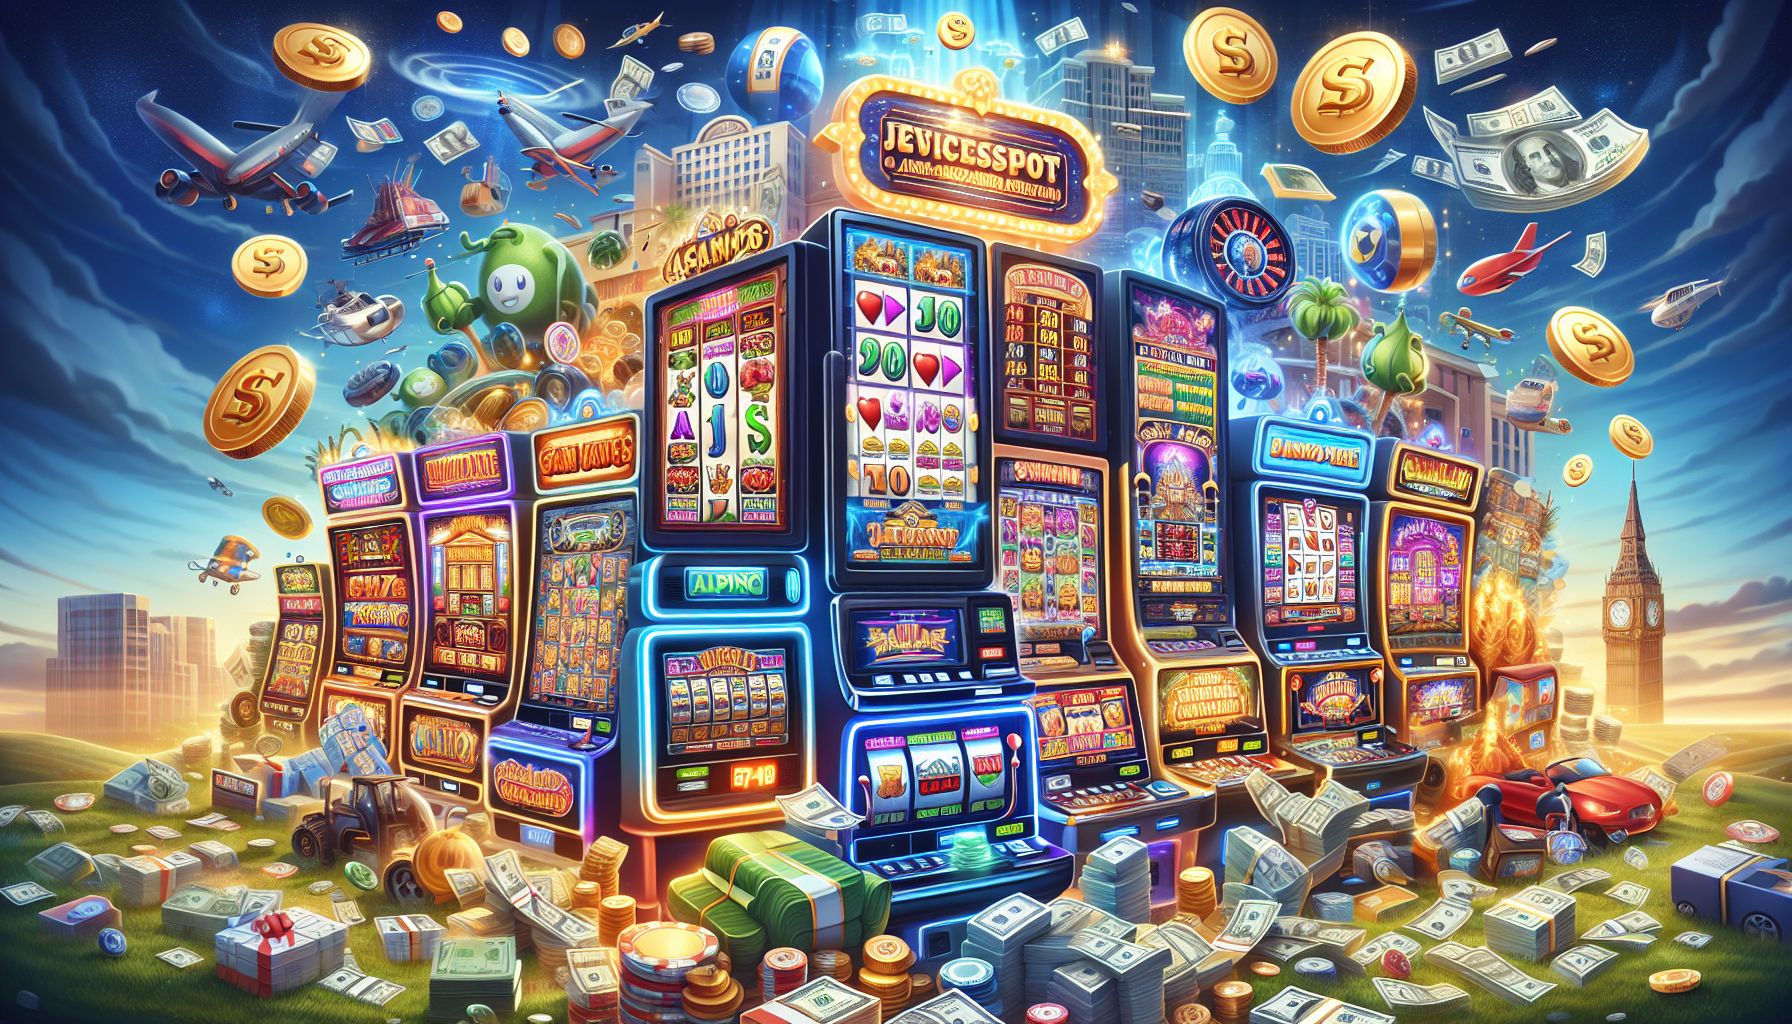 Kumpulan Situs Slot Mudah Menang dengan Jackpot Besar: The Key to Progressive Jackpot Success in Slotomania – Slot Machines, Mobile Gambling, Judi Online, and Game Kasino